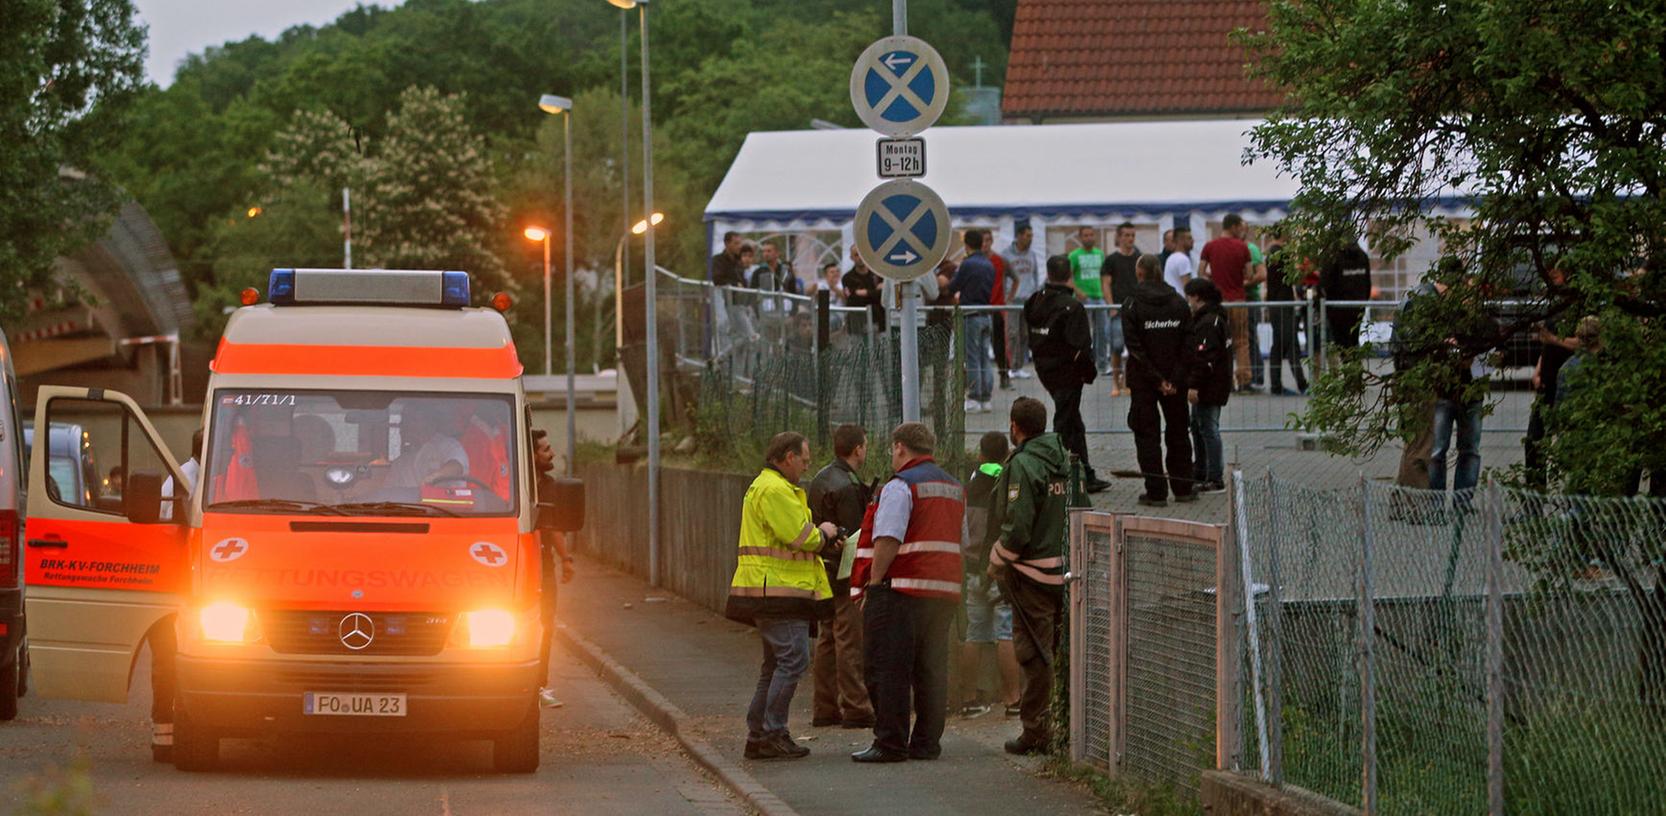 Zwei Pärchen aus Forchheim suchten Streit mit den Bewohnern eines Asylbewerberheims. Die Polizei rückte an.